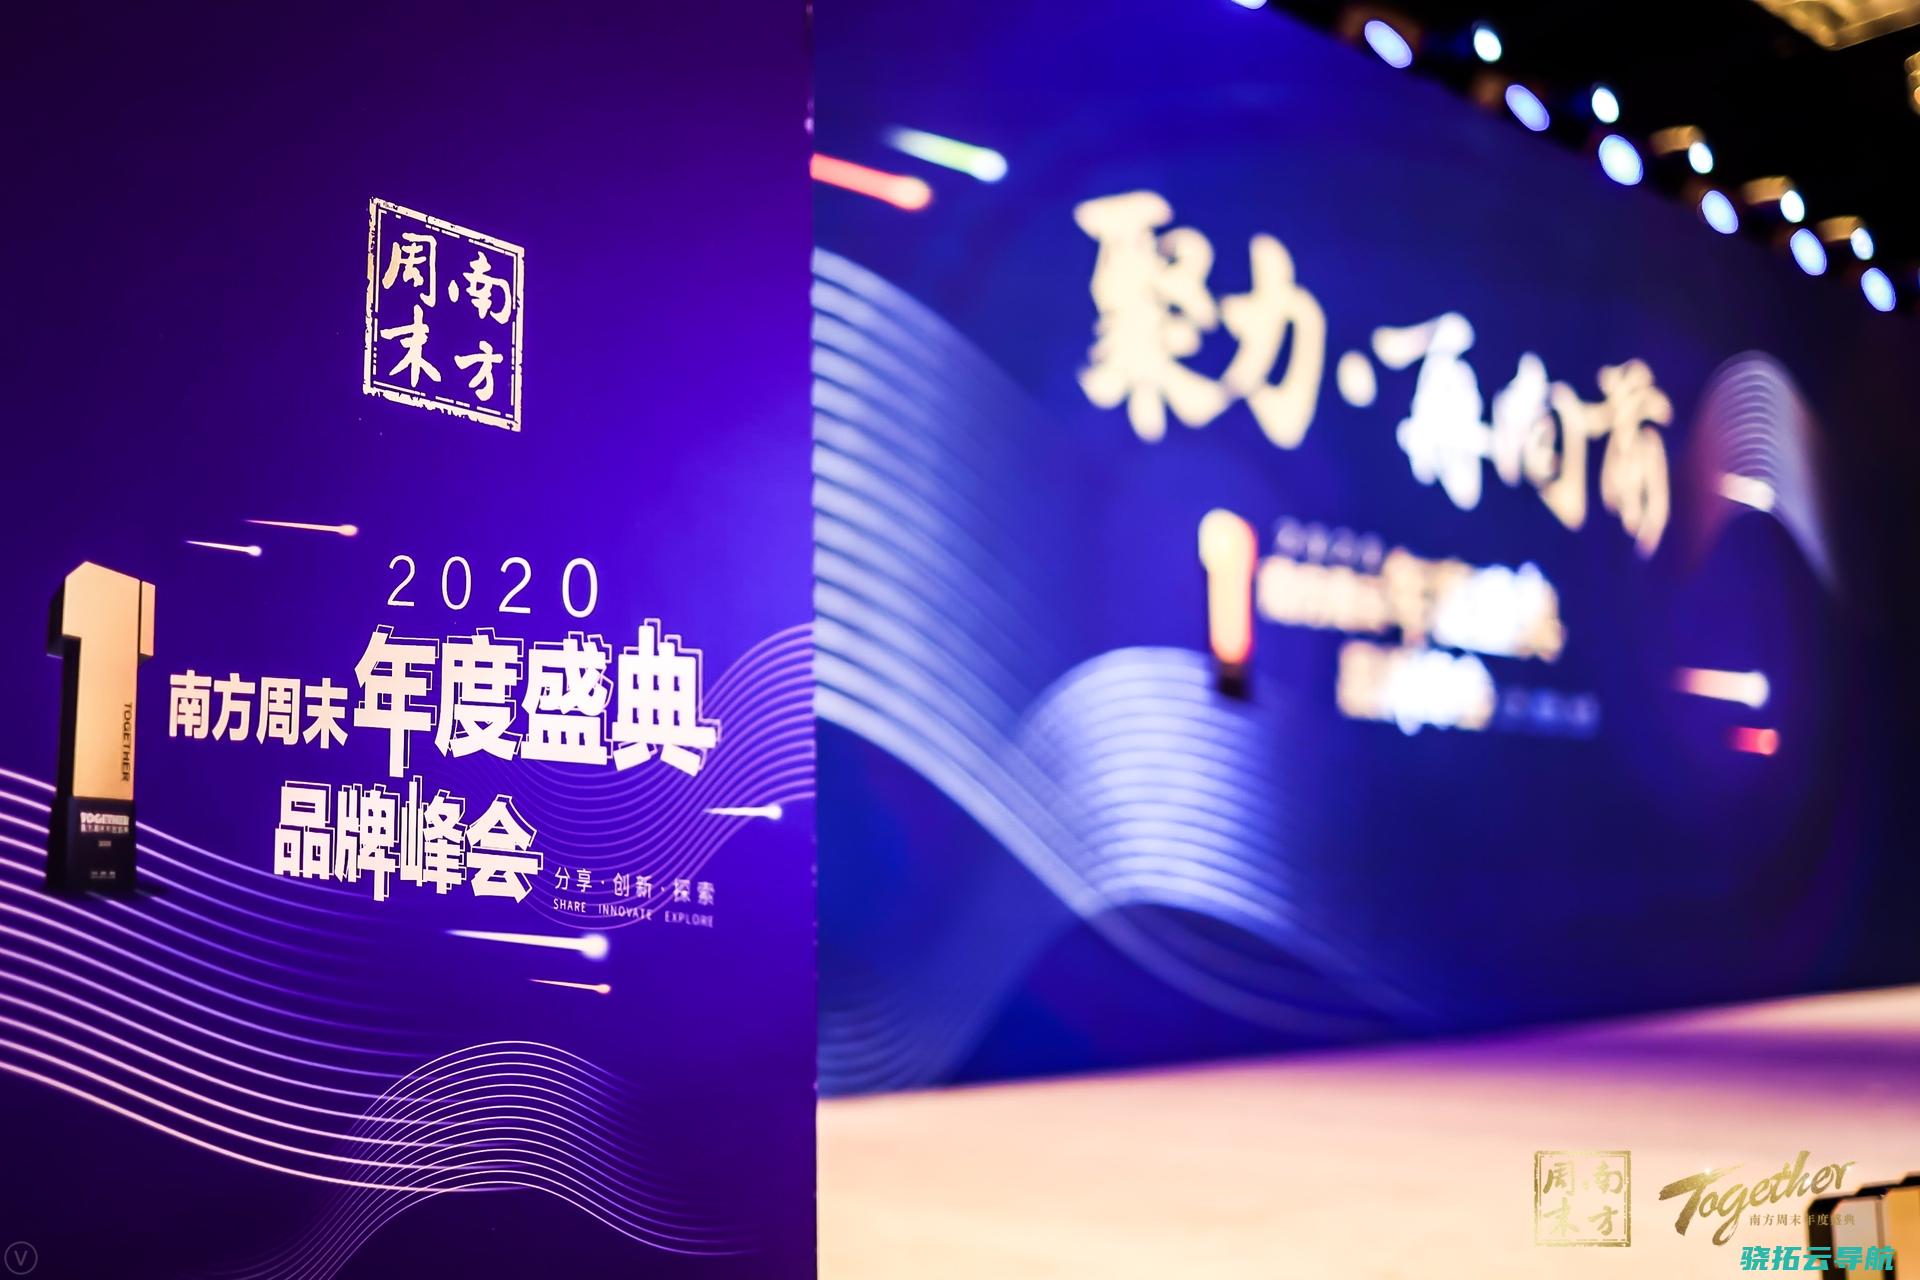   2020南边周末年度盛典品牌峰会在京举办 聚力·再向前